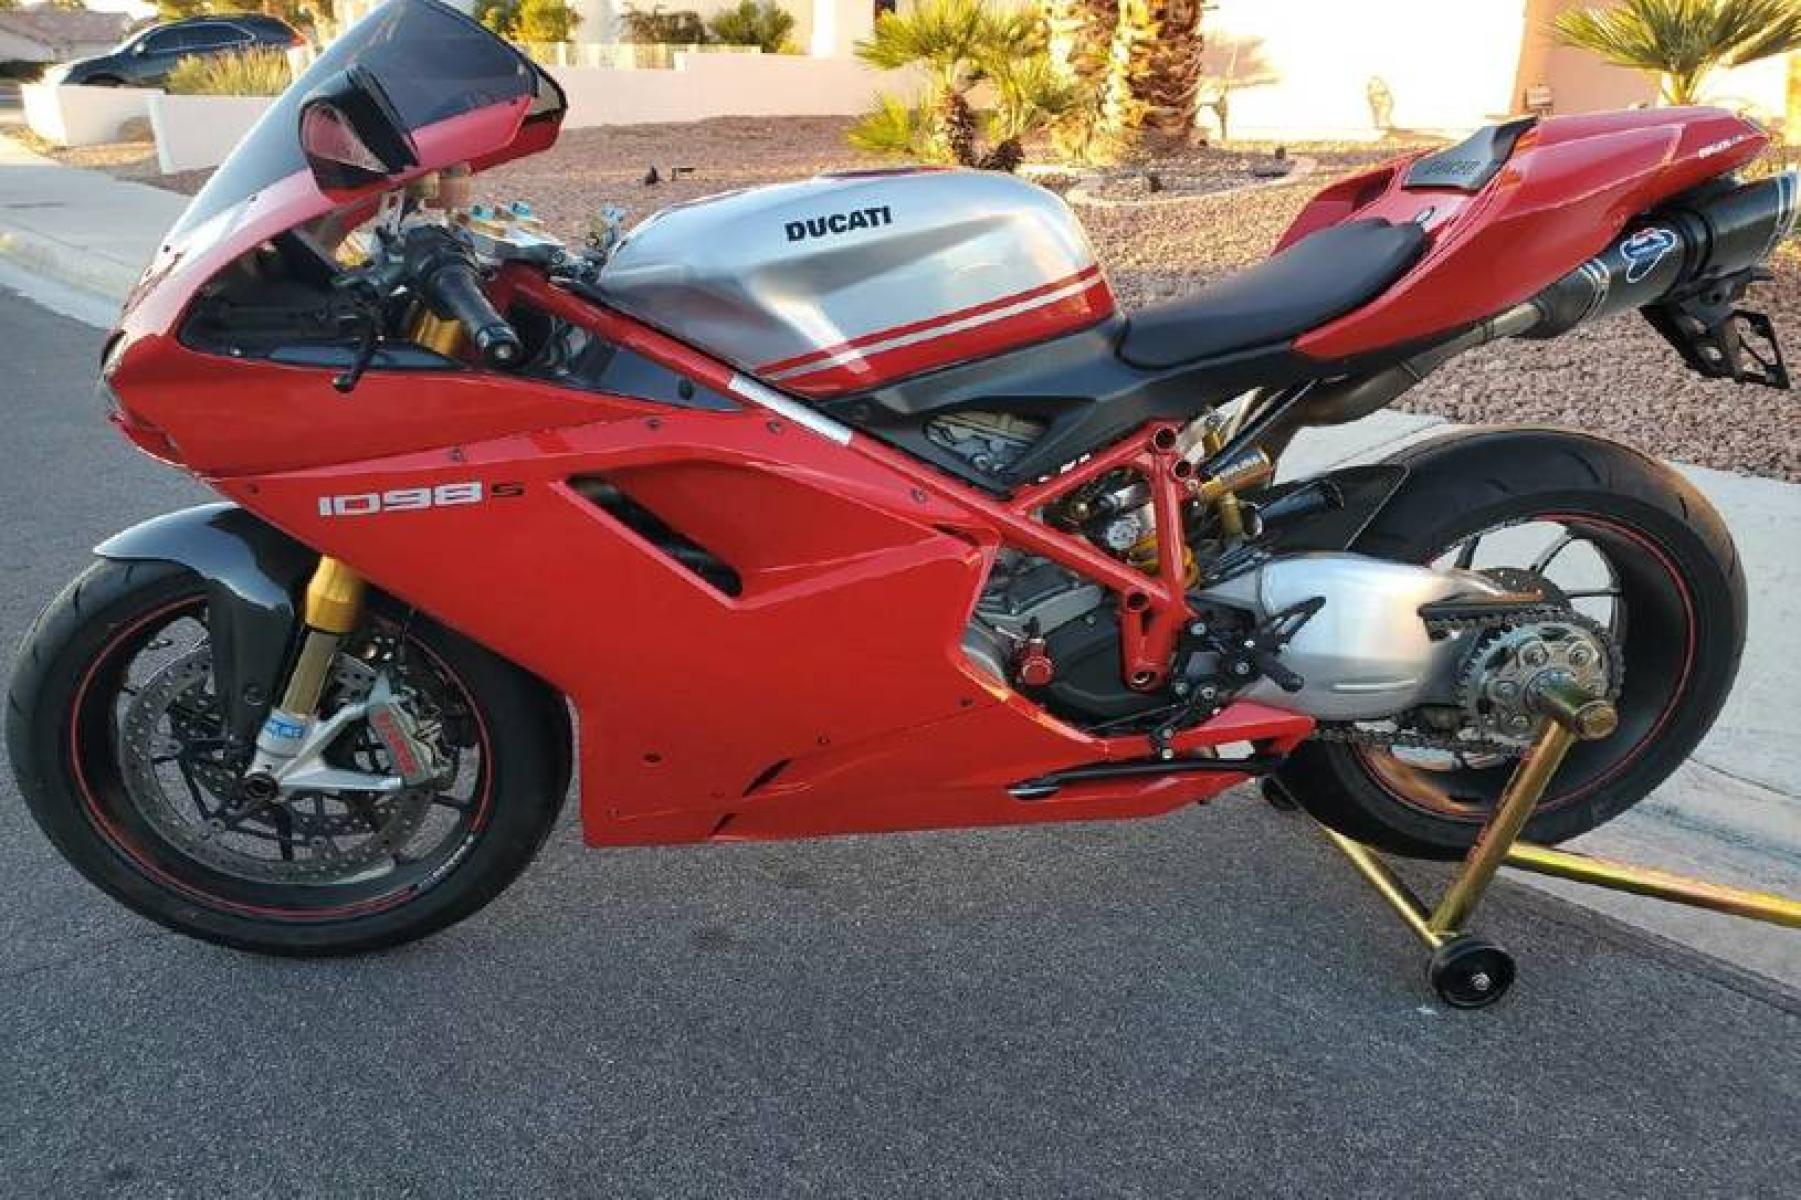 2008 Ducati 1099 S S (ZDM1XBEW18B) with an 1,098 cc L twin engine, Six-Speed Dry Clutch transmission, located at 3160 South Valley View Blvd, Las Vegas, NV, 89146, (888) 750-6845, 36.132458, -115.190247 - b64:VGhlIER1Y2F0aSAxMDk4UyBib2FzdHMgc29tZSBnb3JnZW91cyBib2R5d29yayBhbmQgc2xpY2sgZGVzaWduIGN1ZXMsIGJ1dCBpdHMgcmVhbCBtYXN0ZXJwaWVjZSBsaWVzIGJlbmVhdGggdGhvc2UgcHJldHR5IHBsYXN0aWMgcGFuZWxzLiBVbmRlcm5lYXRoIGlzIGEgdHVidWxhciBzdGVlbCB0cmVsbGlzIGZyYW1lIG9wdGltaXplZCBmb3Igc3RpZmZuZXNzLCBhbmQgYW4gTC10d2luIGVu - Photo #0